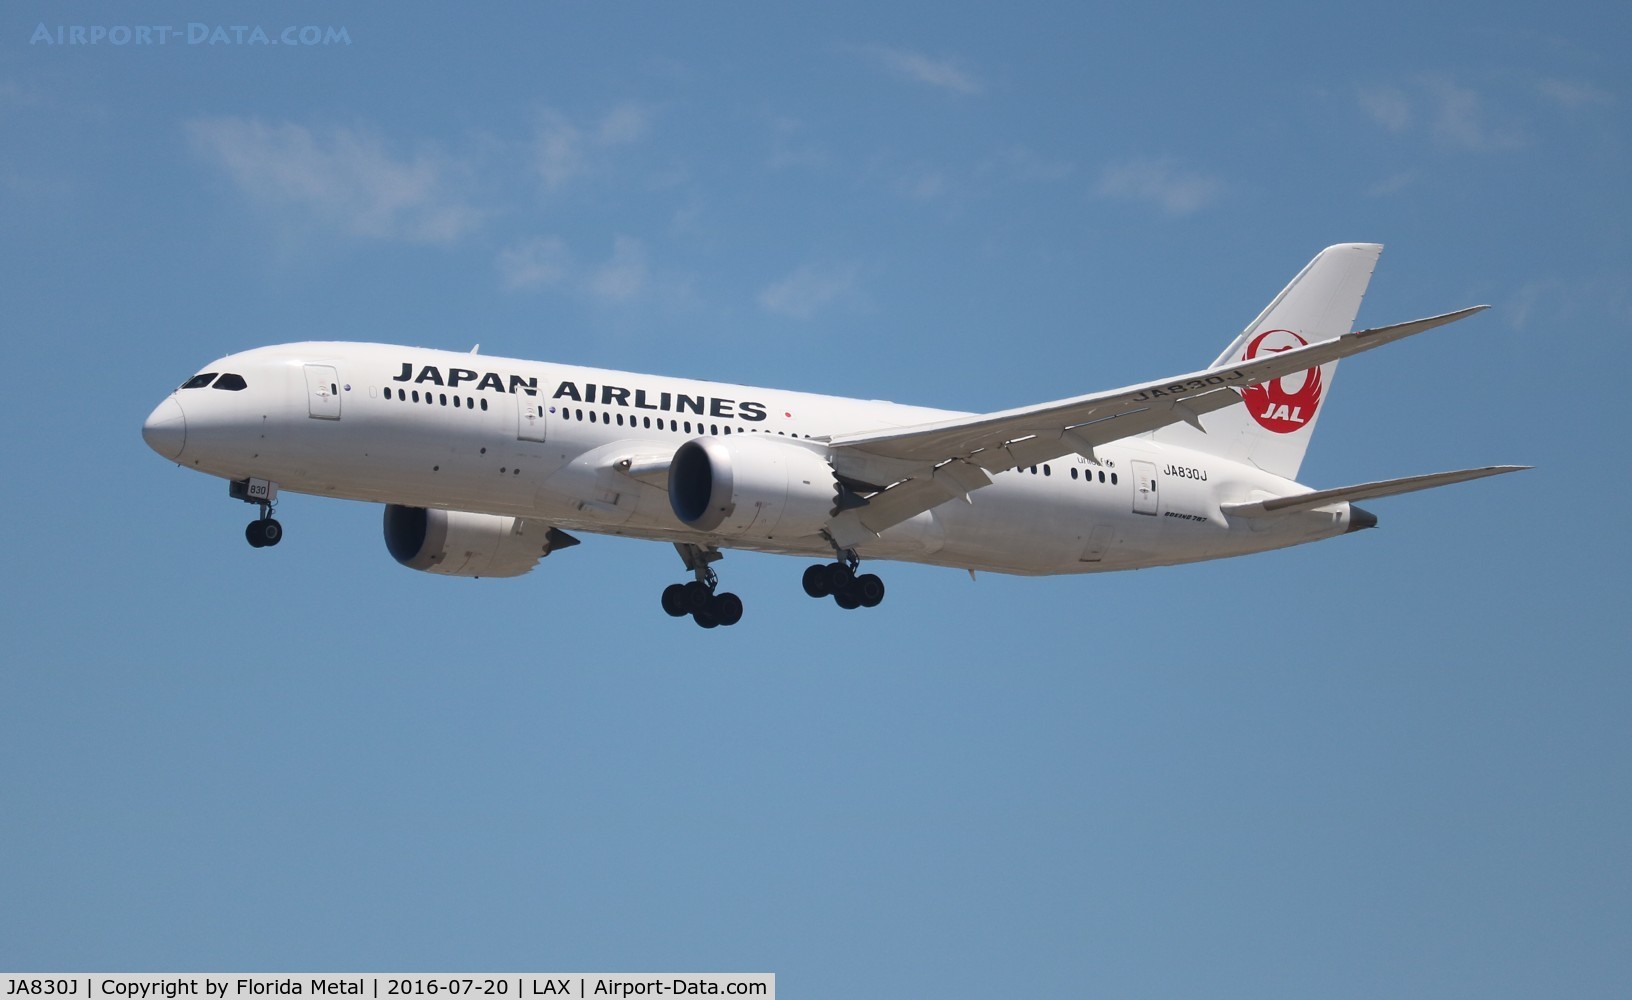 JA830J, 2013 Boeing 787-8 Dreamliner C/N 34840, Japan Airlines